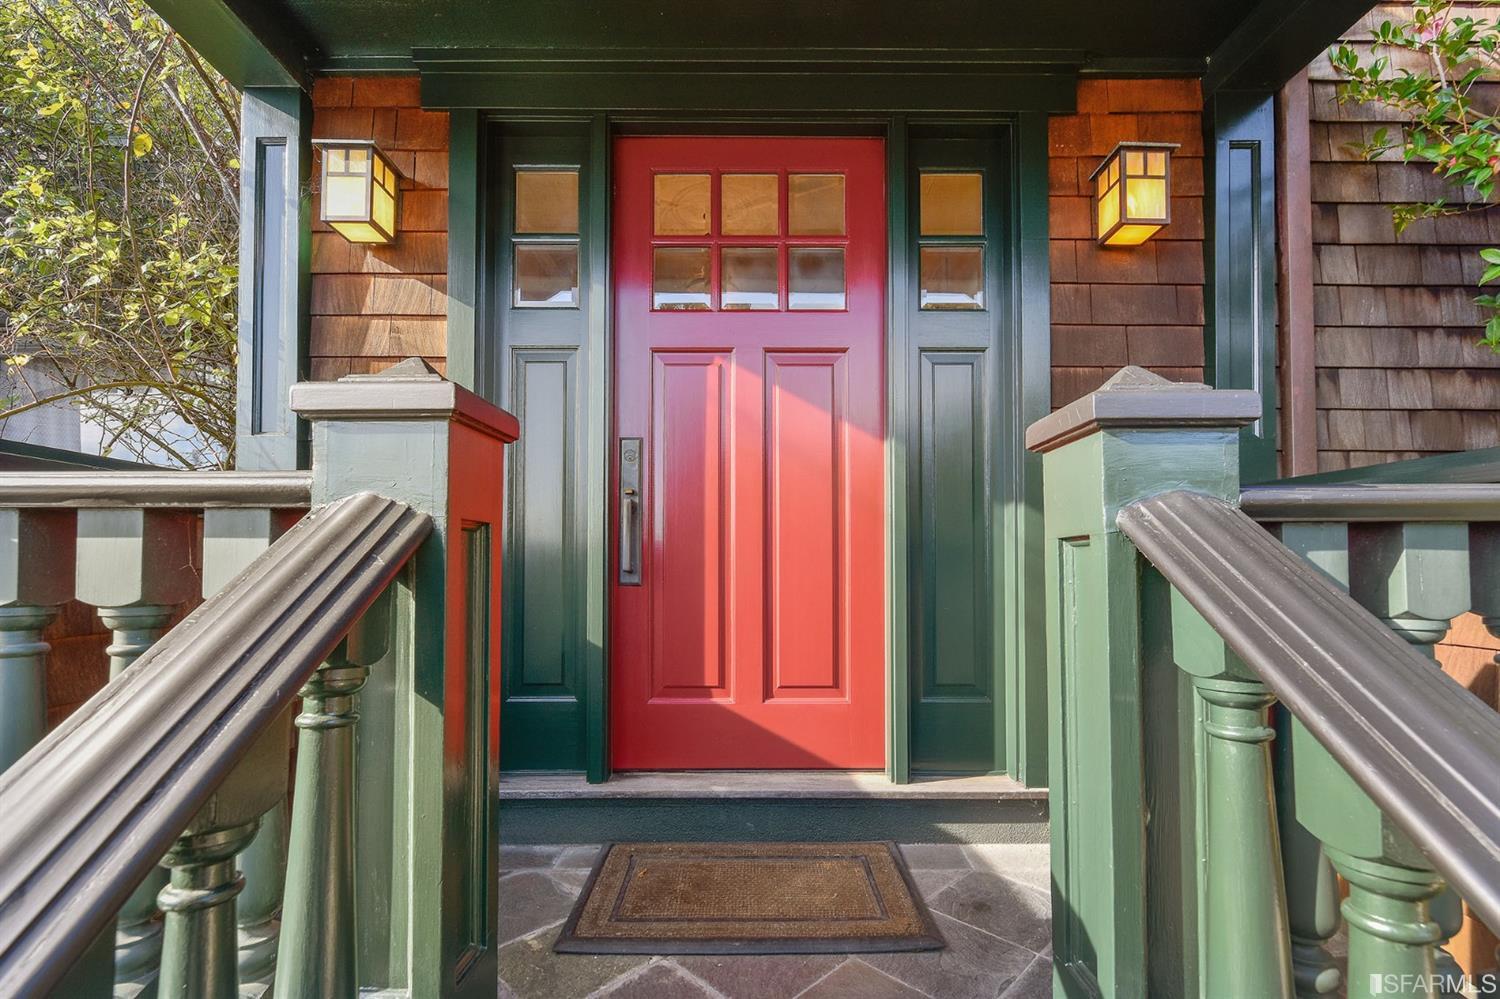 View of a red front door